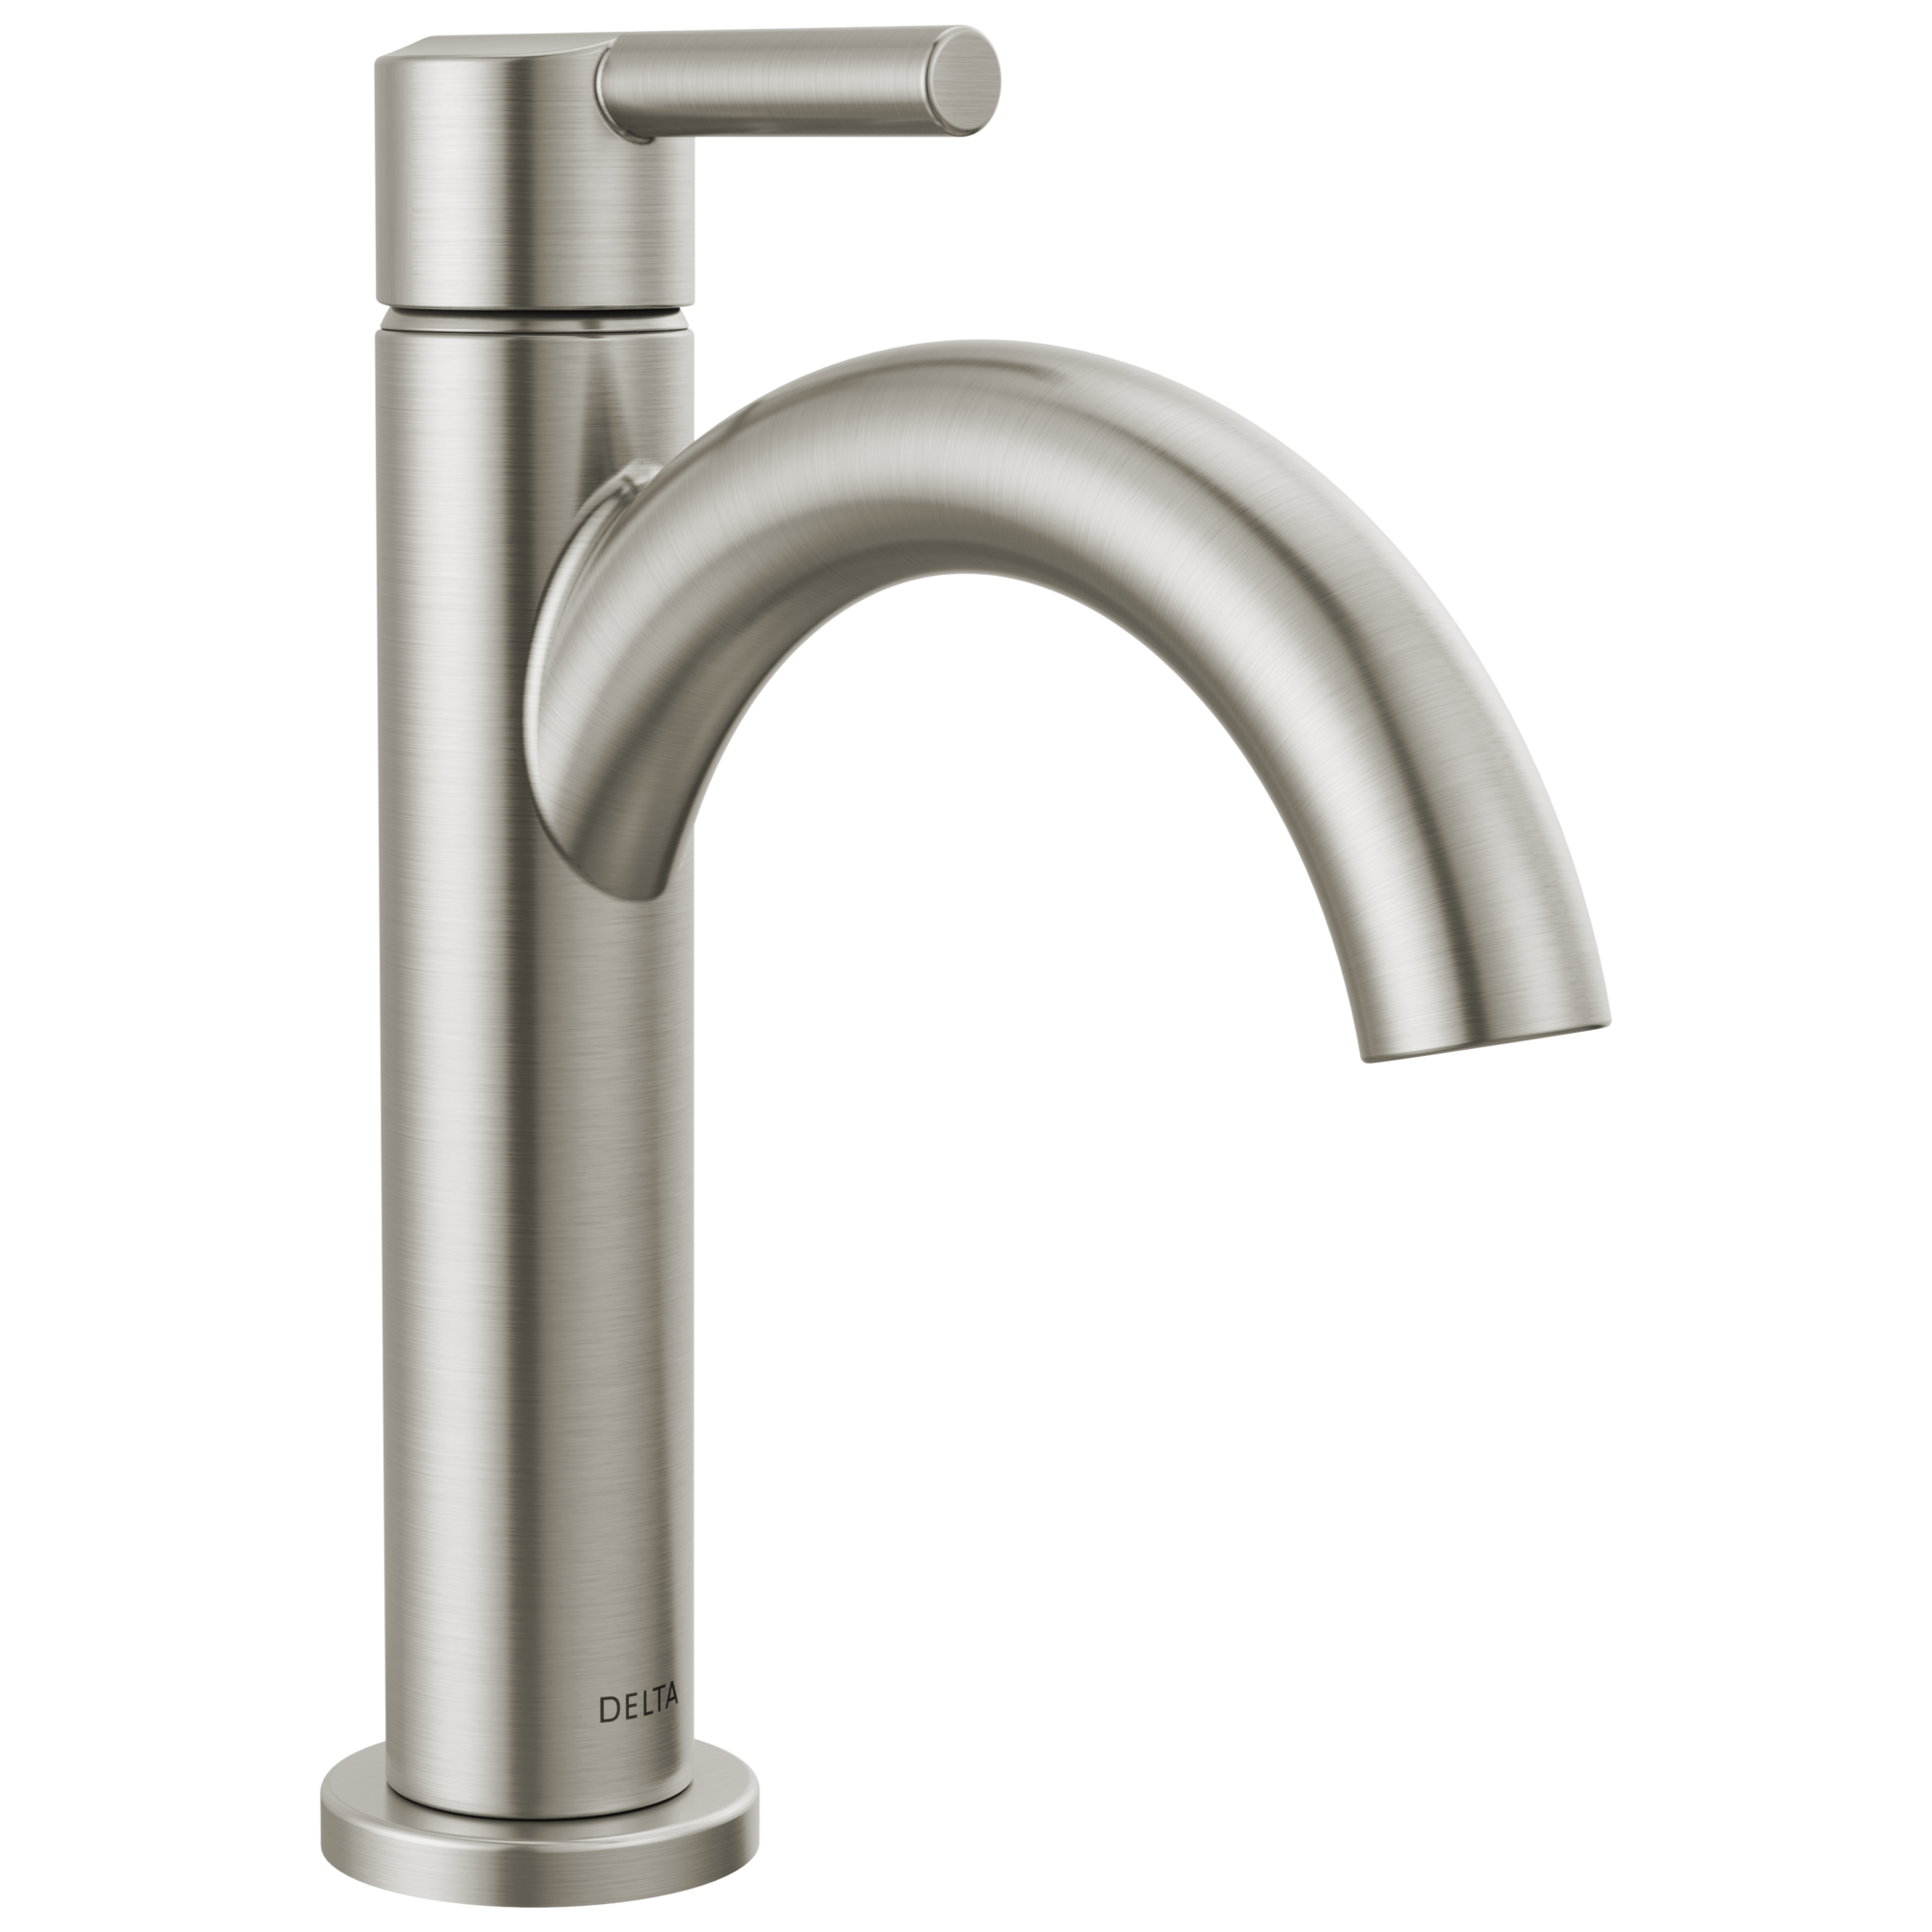 Delta Nicoli™: Single Handle Bathroom Faucet